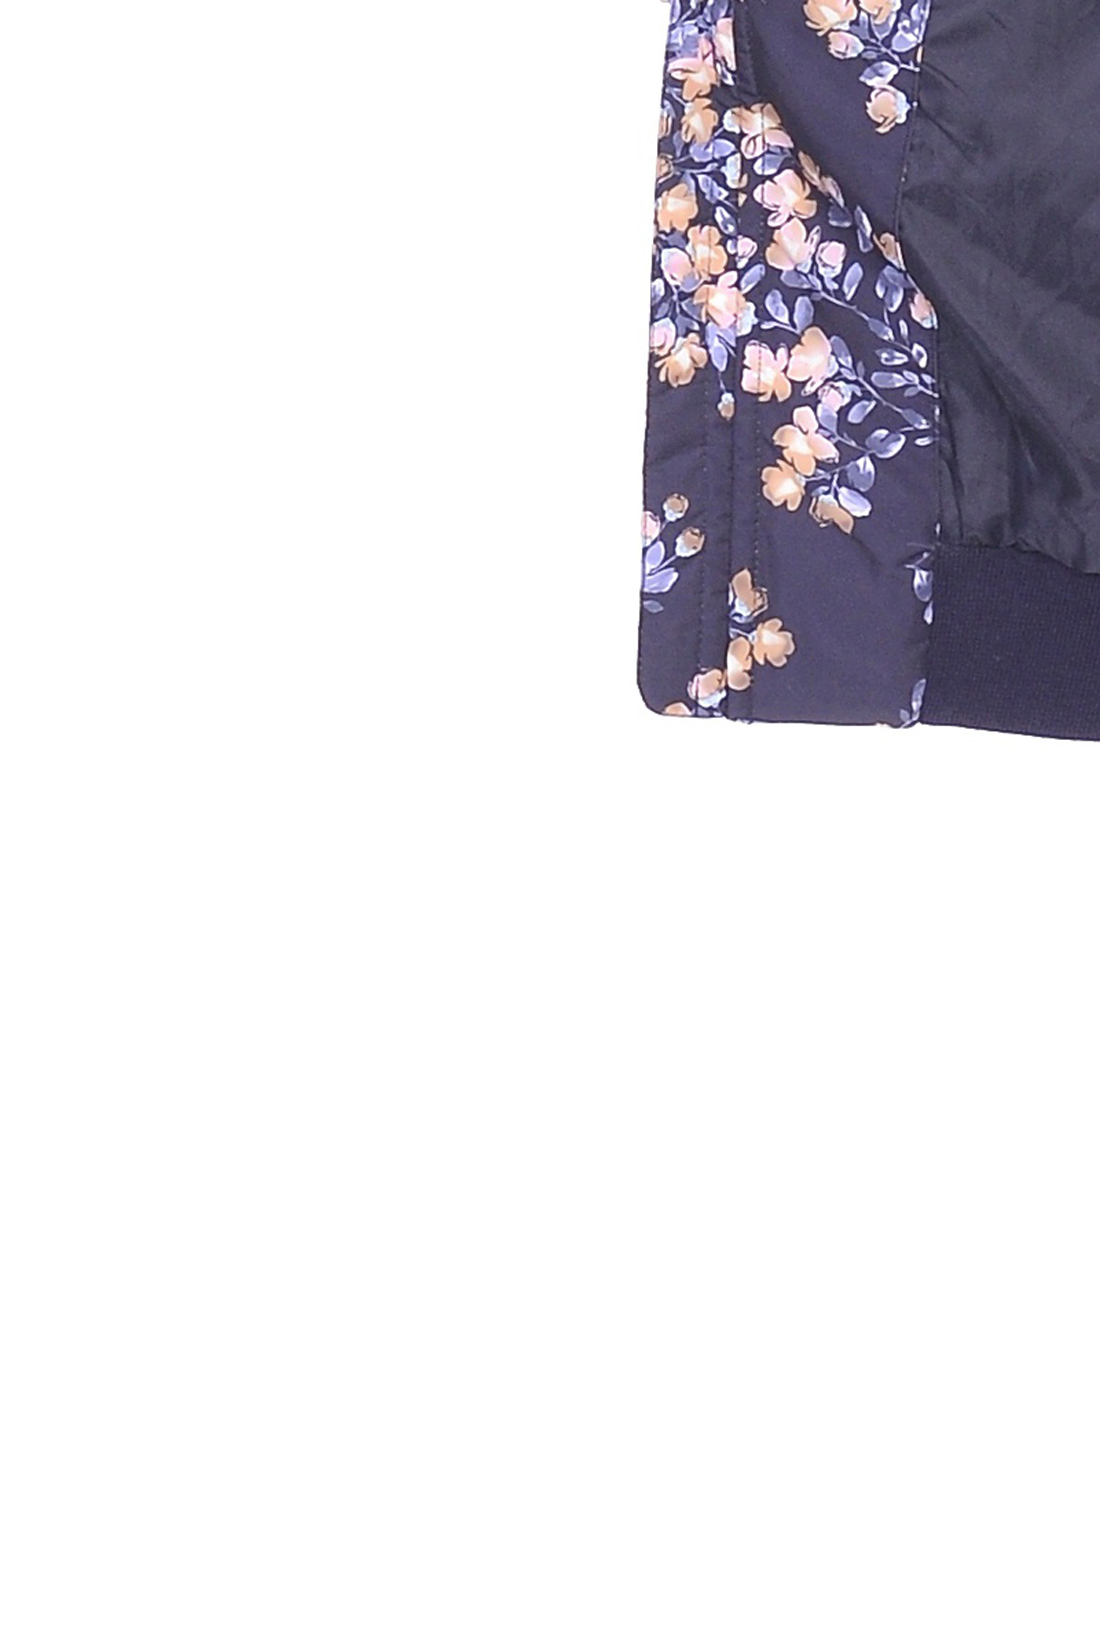 Куртка-бомбер с цветочным принтом (арт. baon B039023), размер XXL Куртка-бомбер с цветочным принтом (арт. baon B039023) - фото 4